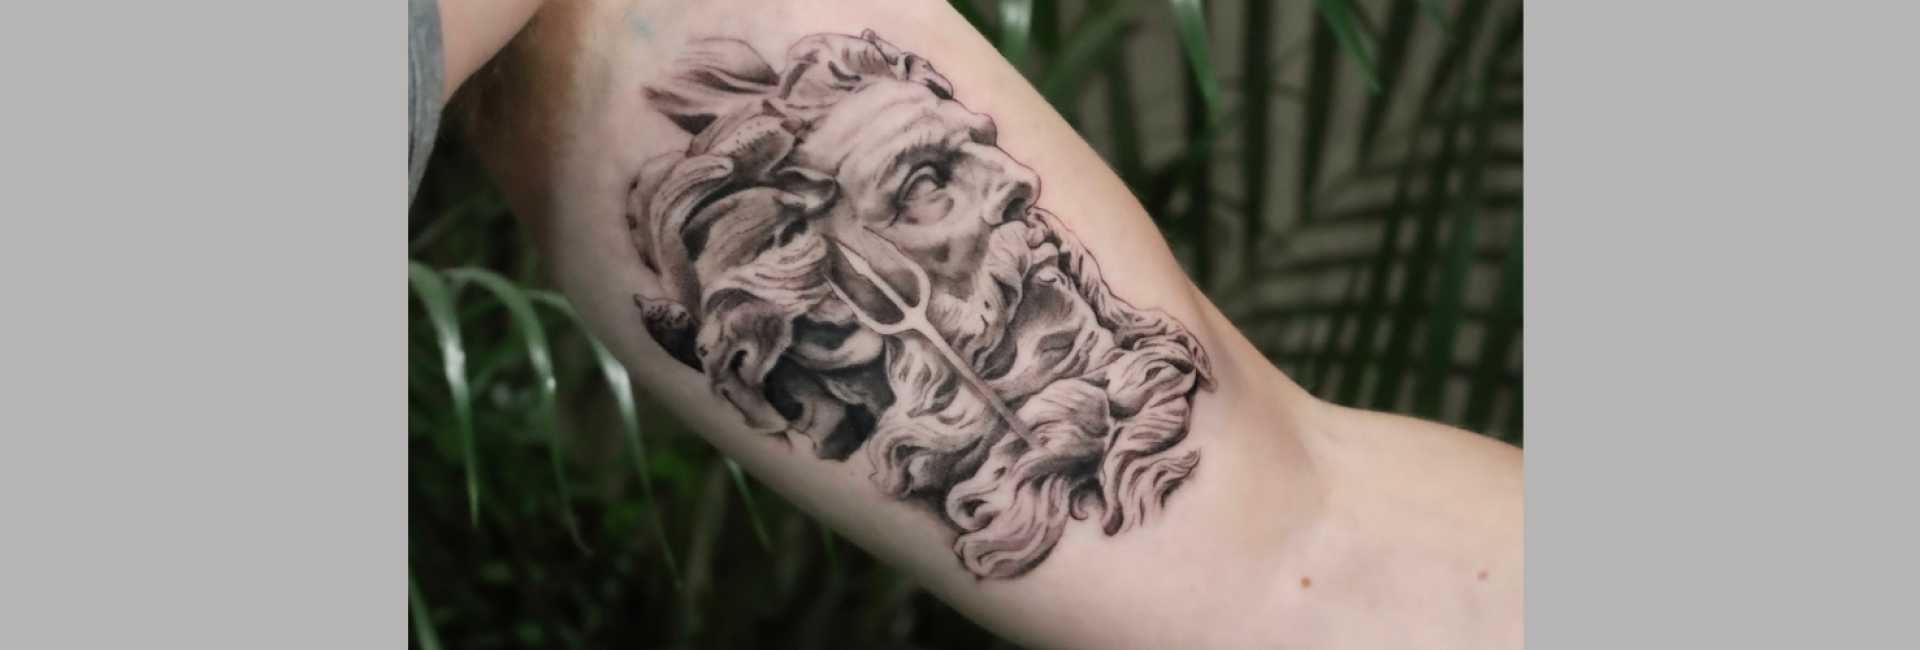 vitruvian tattoo genk realisme tattoo